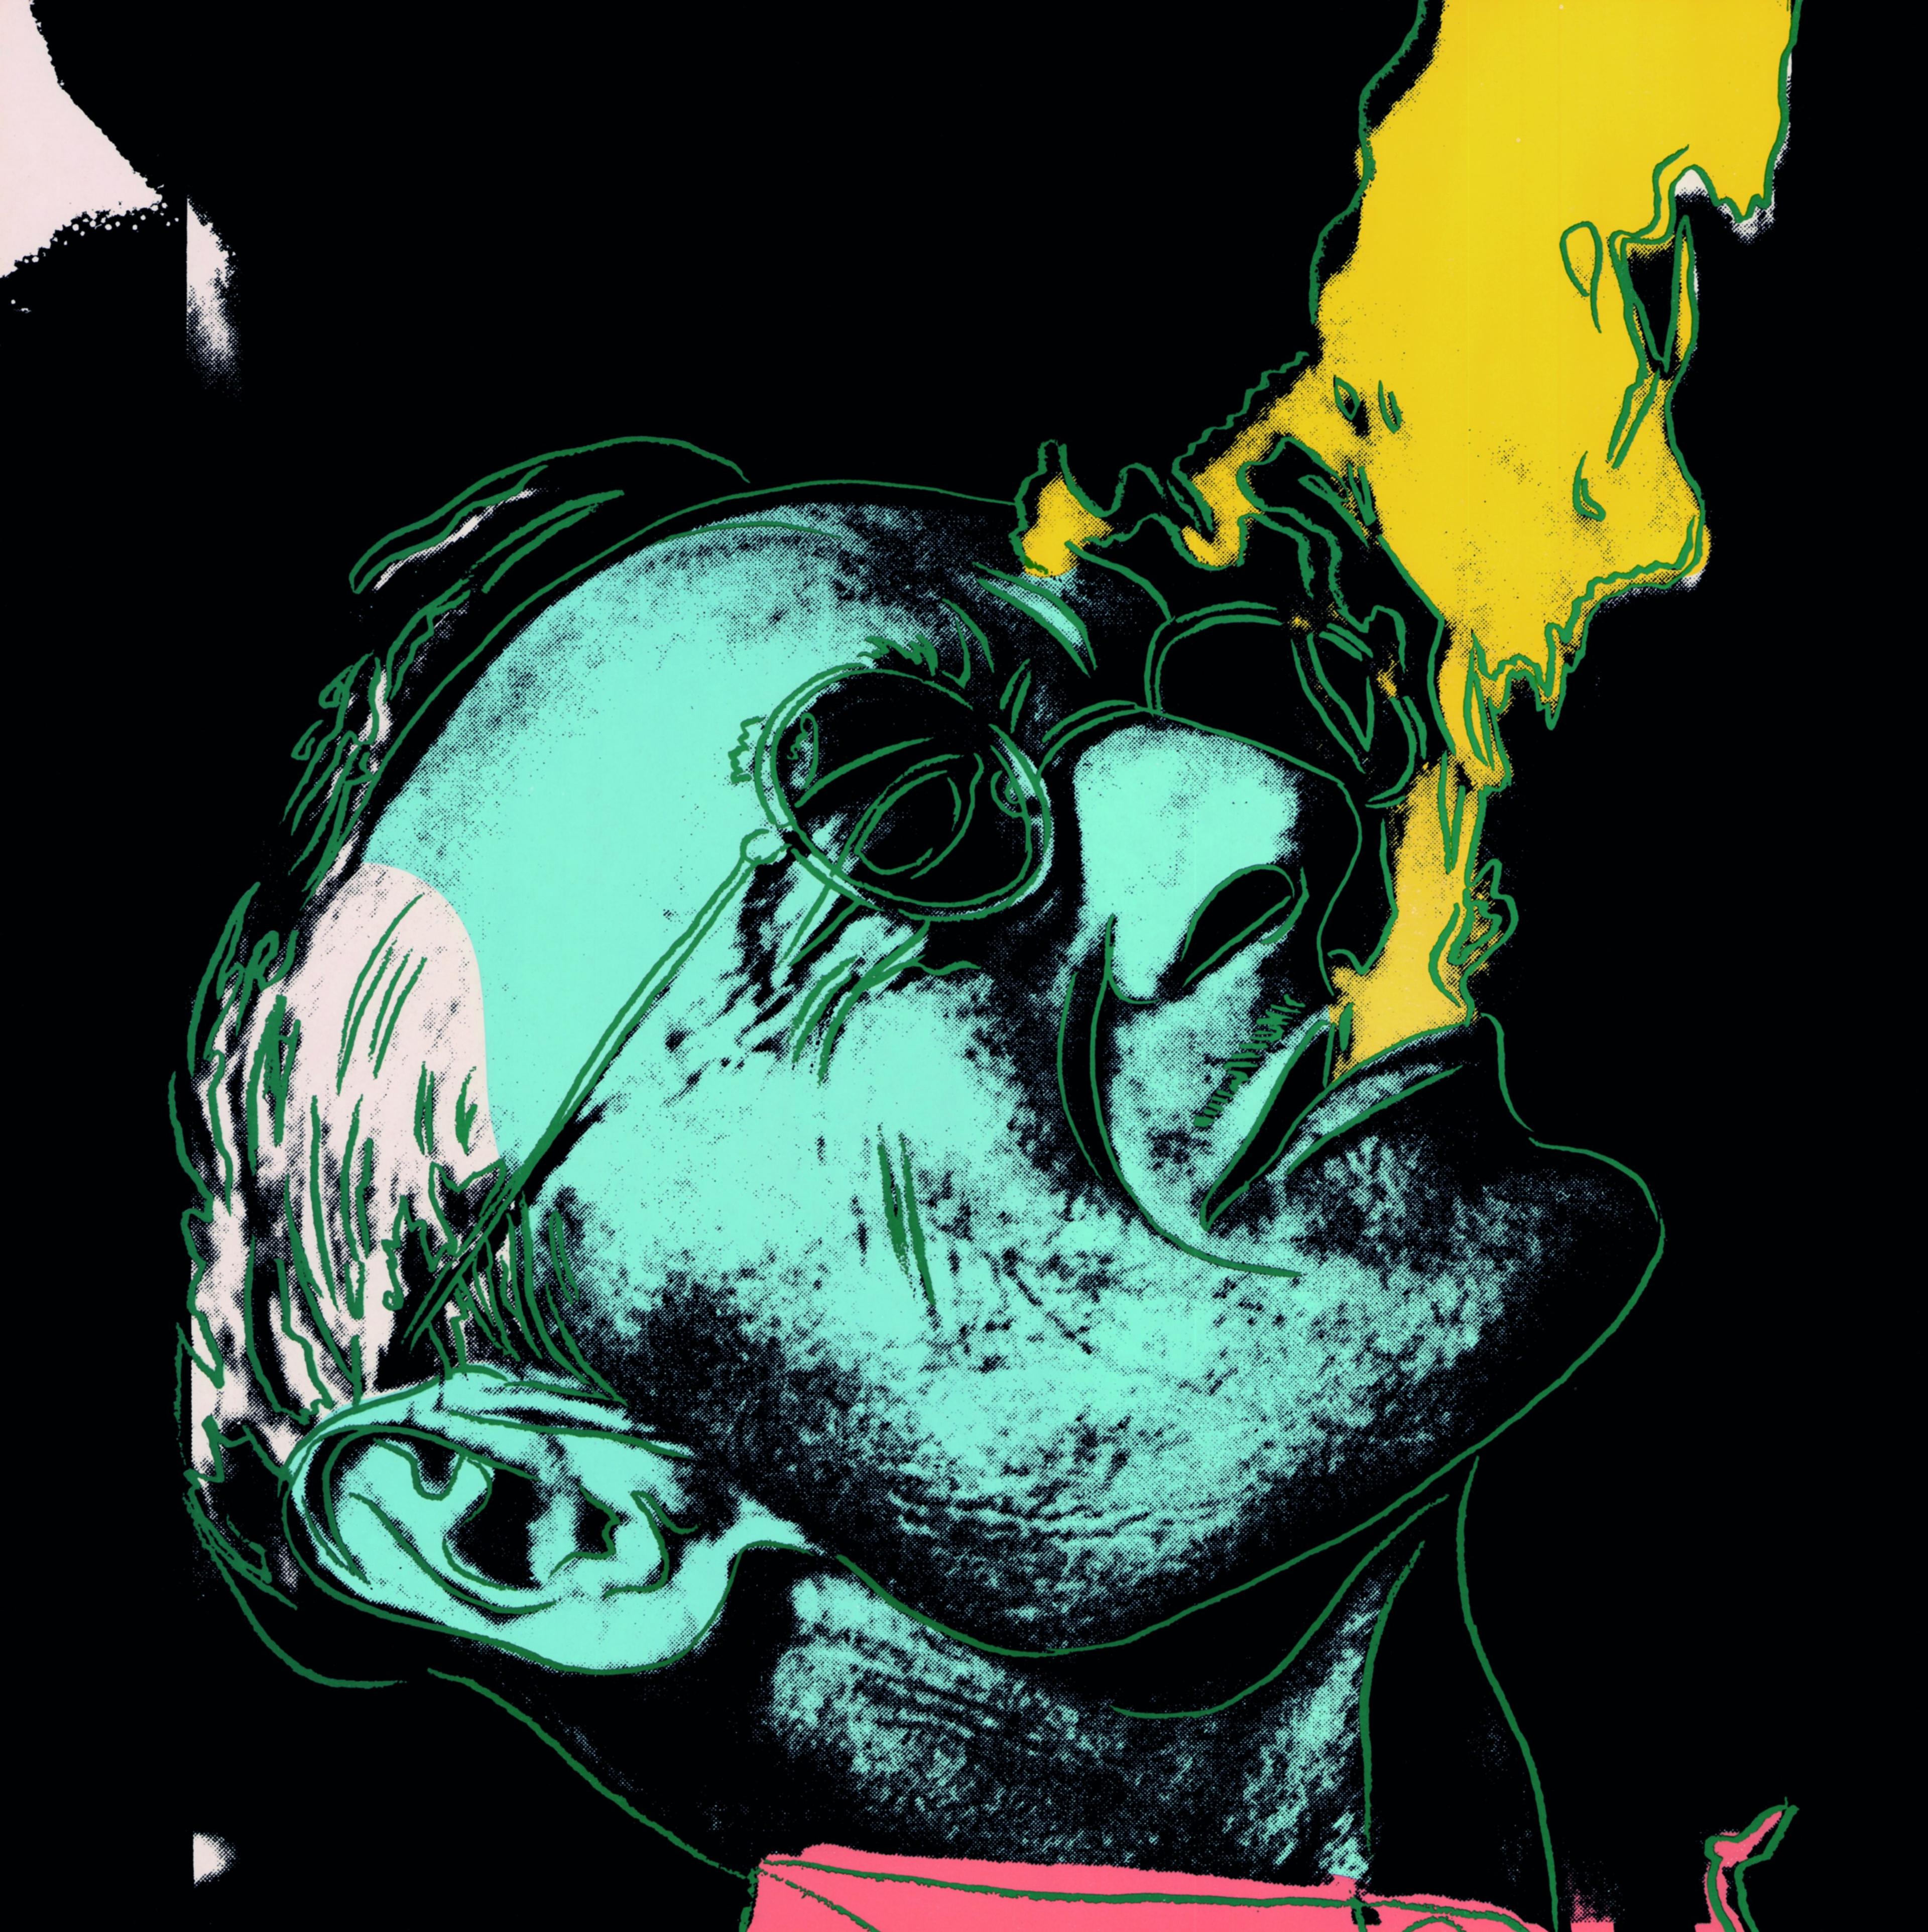 Darstellung von Hermann Hesse aus dessen Mund Rauch austritt